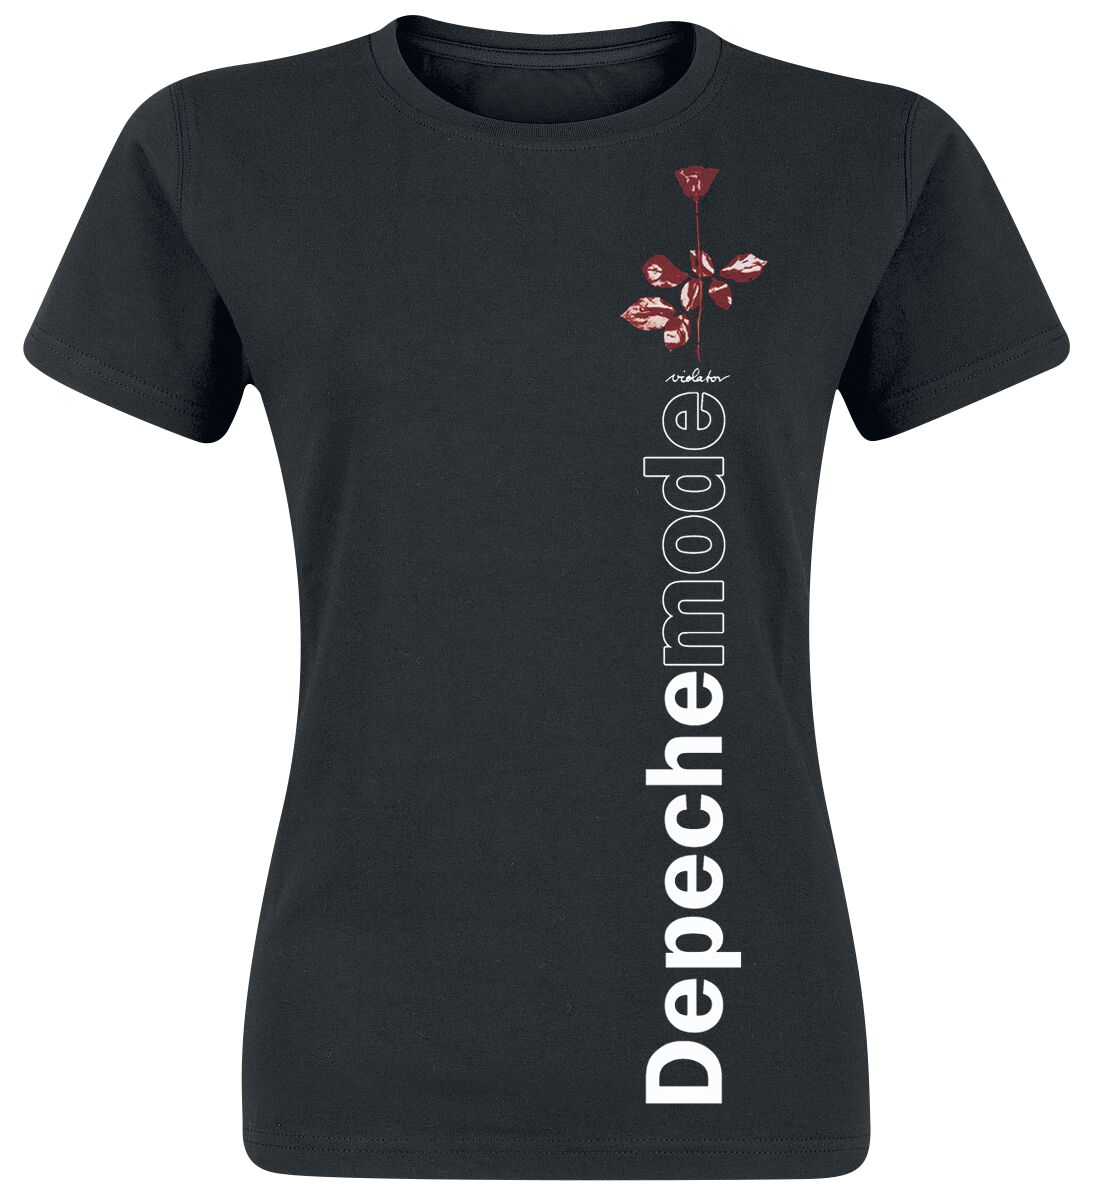 Depeche Mode T-Shirt - Violator Side Rose - S bis XXL - für Damen - Größe L - schwarz  - Lizenziertes Merchandise!